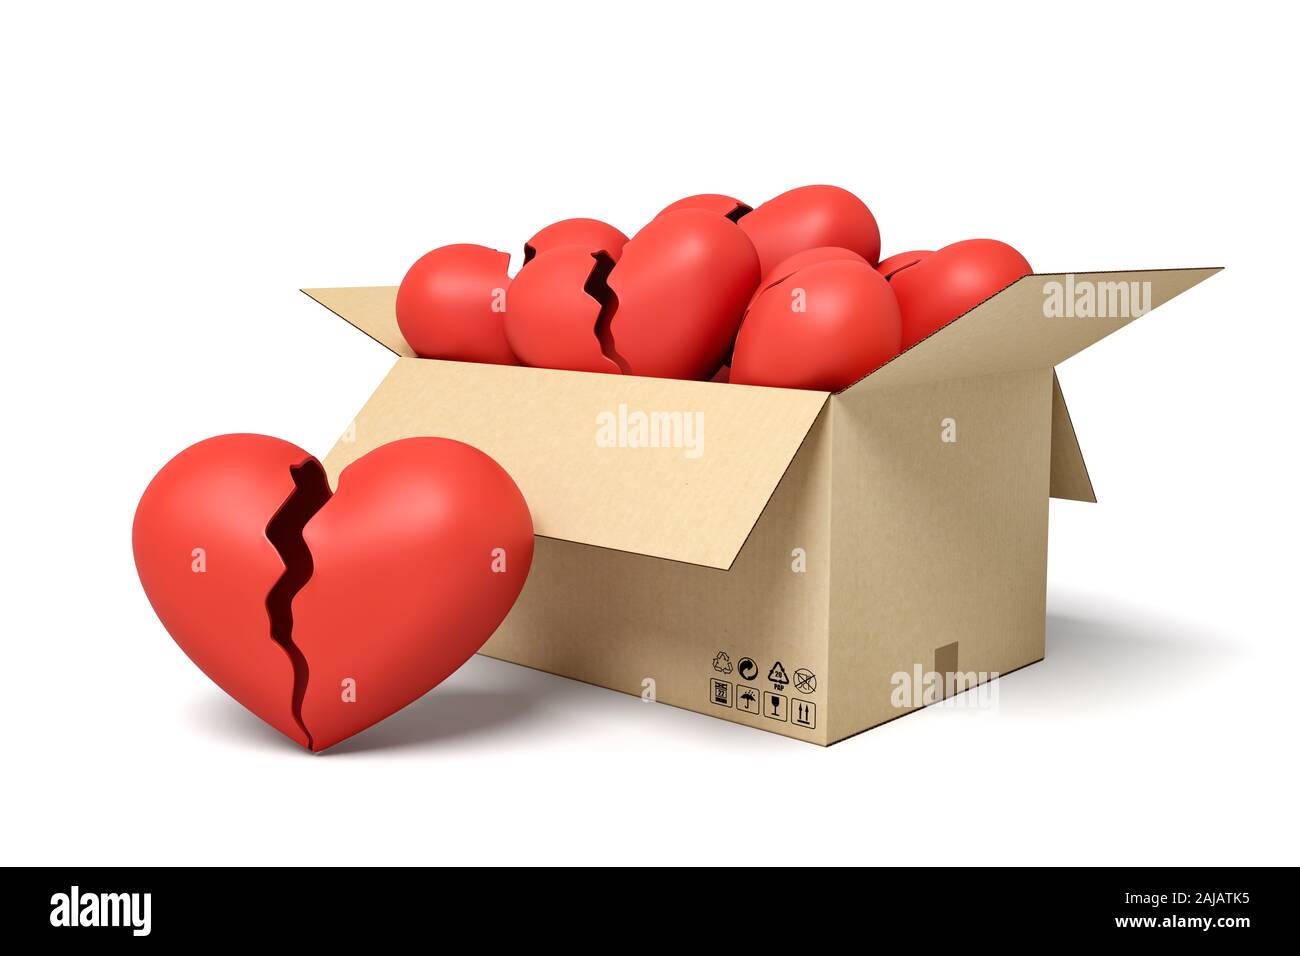 Le rendu 3d de carton rouge boîte pleine de cœurs brisés. Concept Art numérique des idées. Sentiments et émotions. Banque D'Images